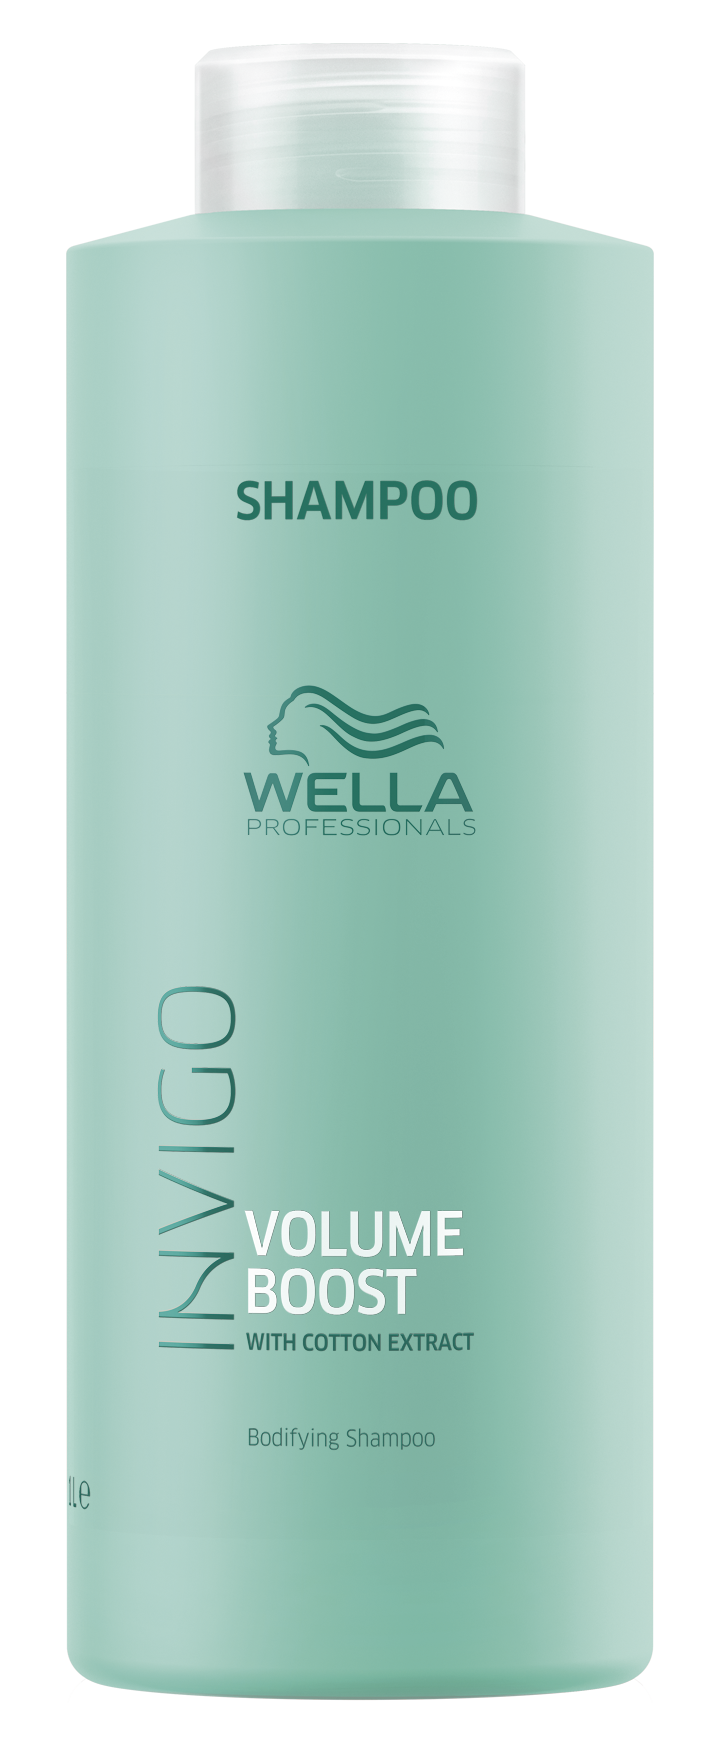 WELLA PROFESSIONALS Шампунь для придания объема / Volume Boost 1000 мл wella professionals шампунь для придания объема volume boost 1000 мл